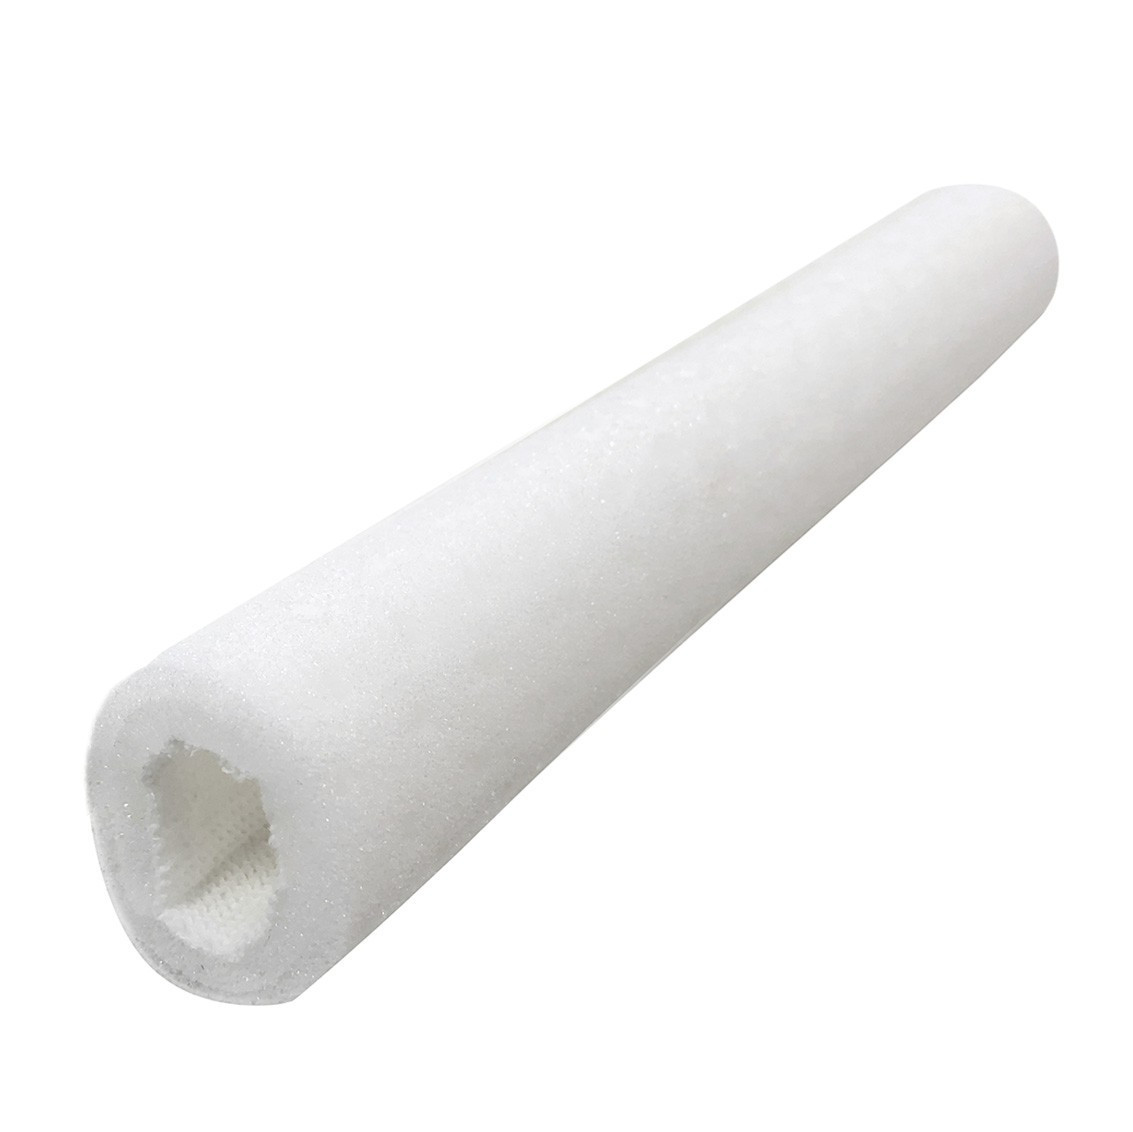 Protezione tubolare Tubifoam T-Air Foam Doppio strato 15 mm 10 pz